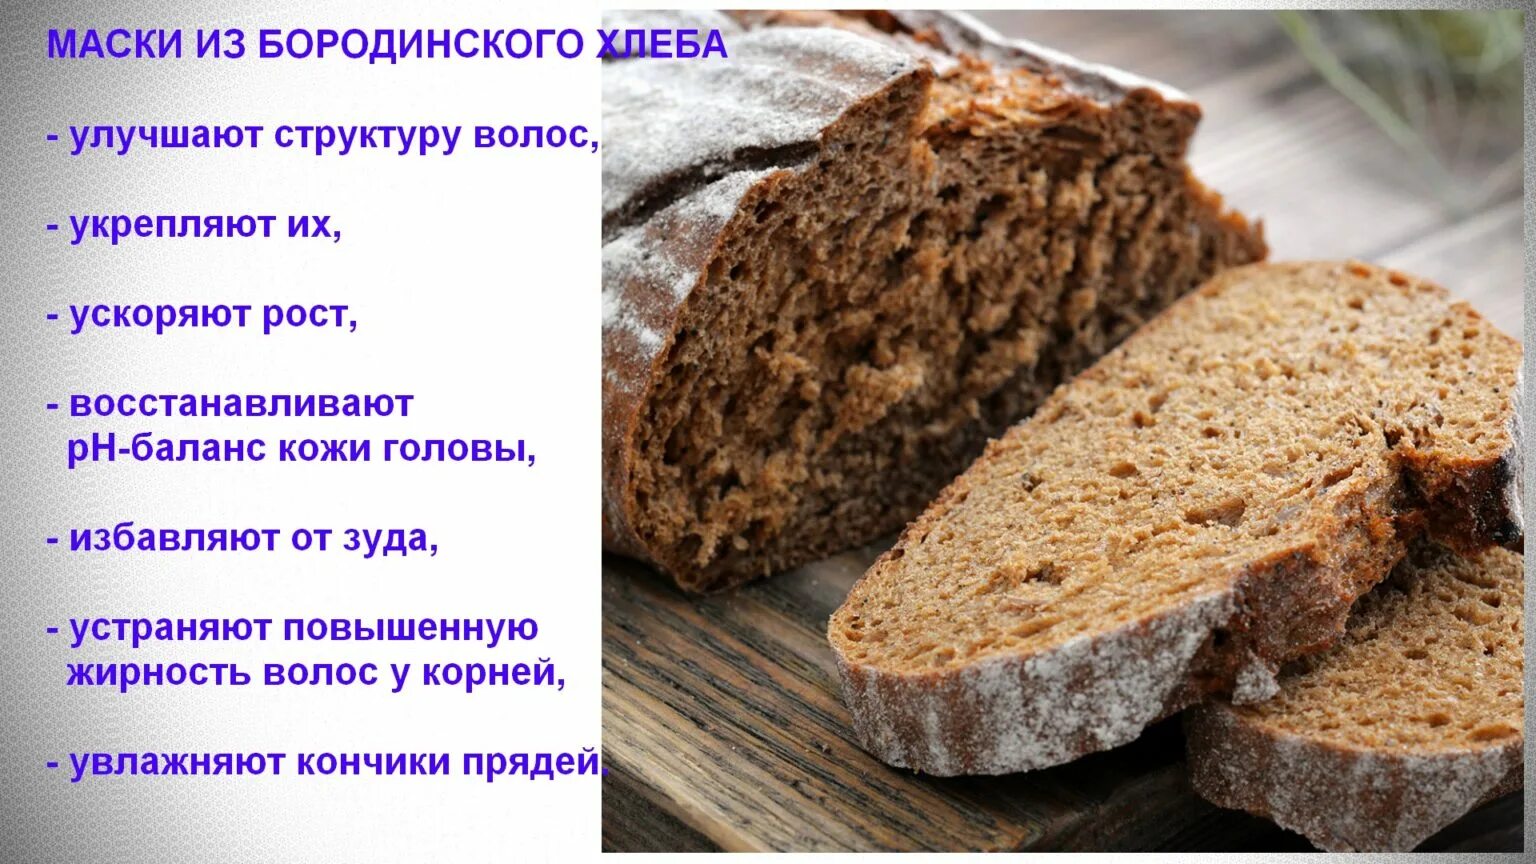 Можно кормить черным хлебом. Ржаной хлеб. Ржаной хлеб Бородинский. Черный хлеб состав. Рецептура ржаного хлеба Бородинского.